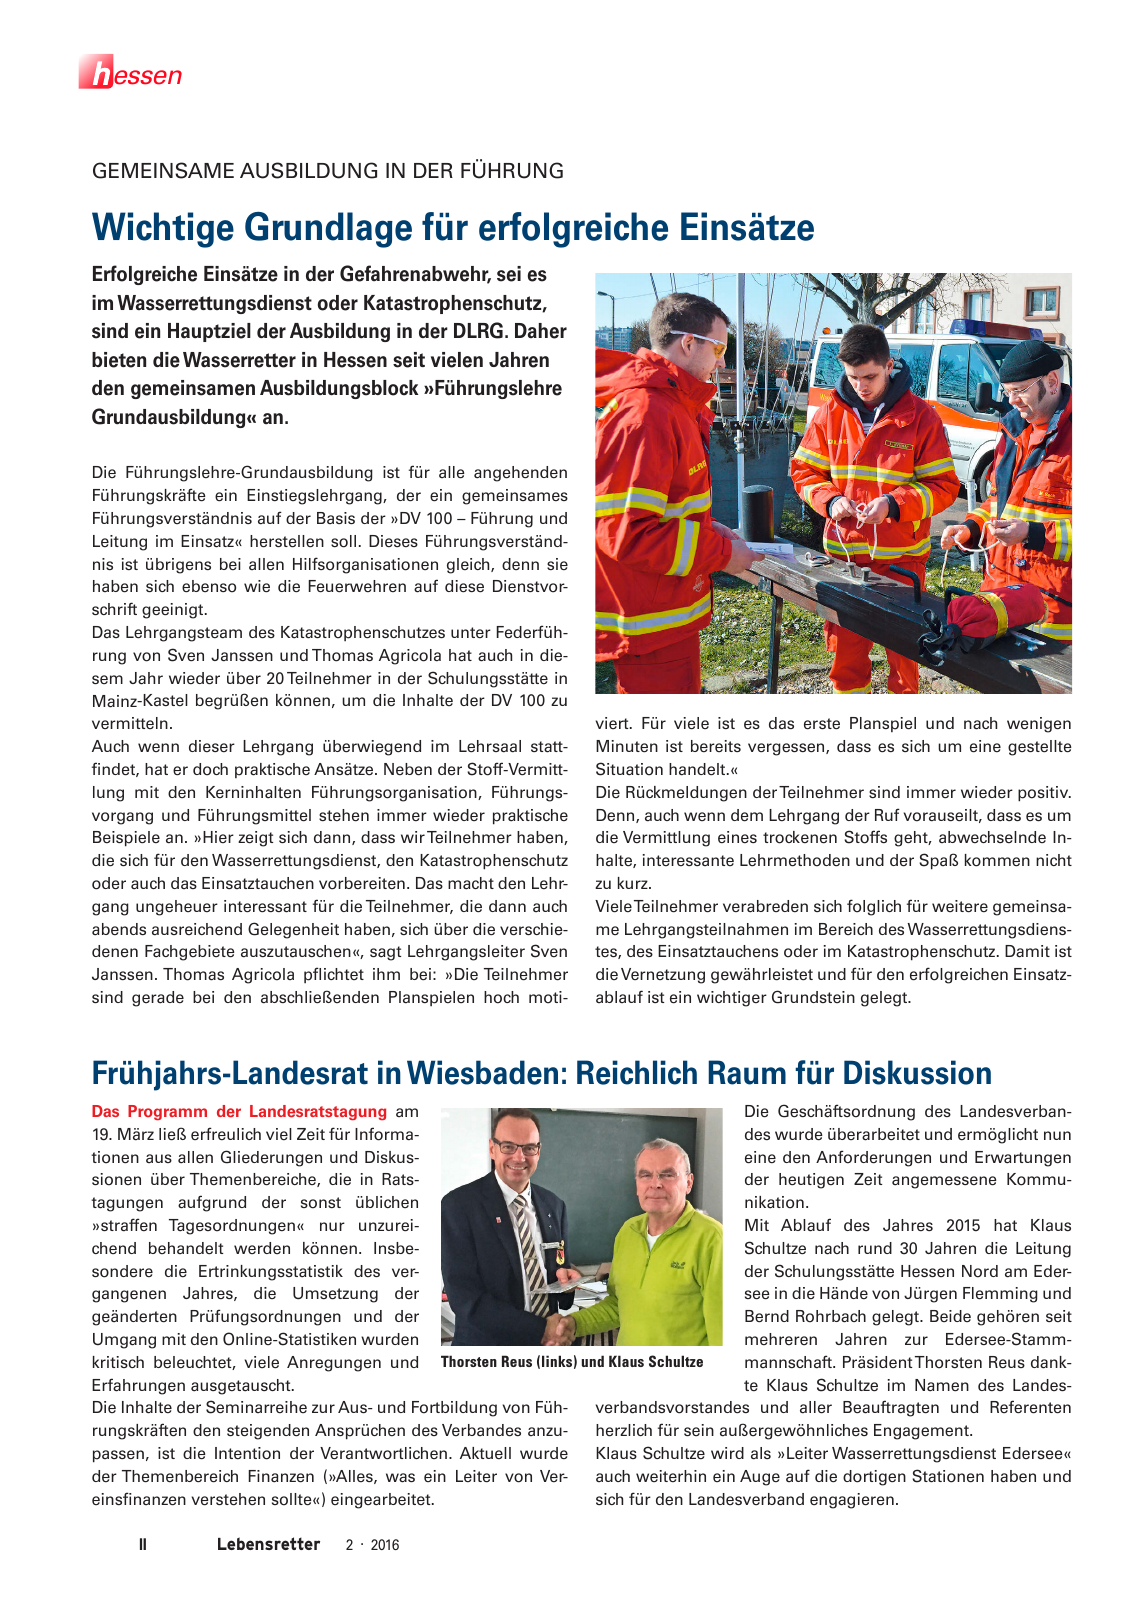 Vorschau Lebensretter 2/2016 - Regionalausgabe Hessen Seite 4